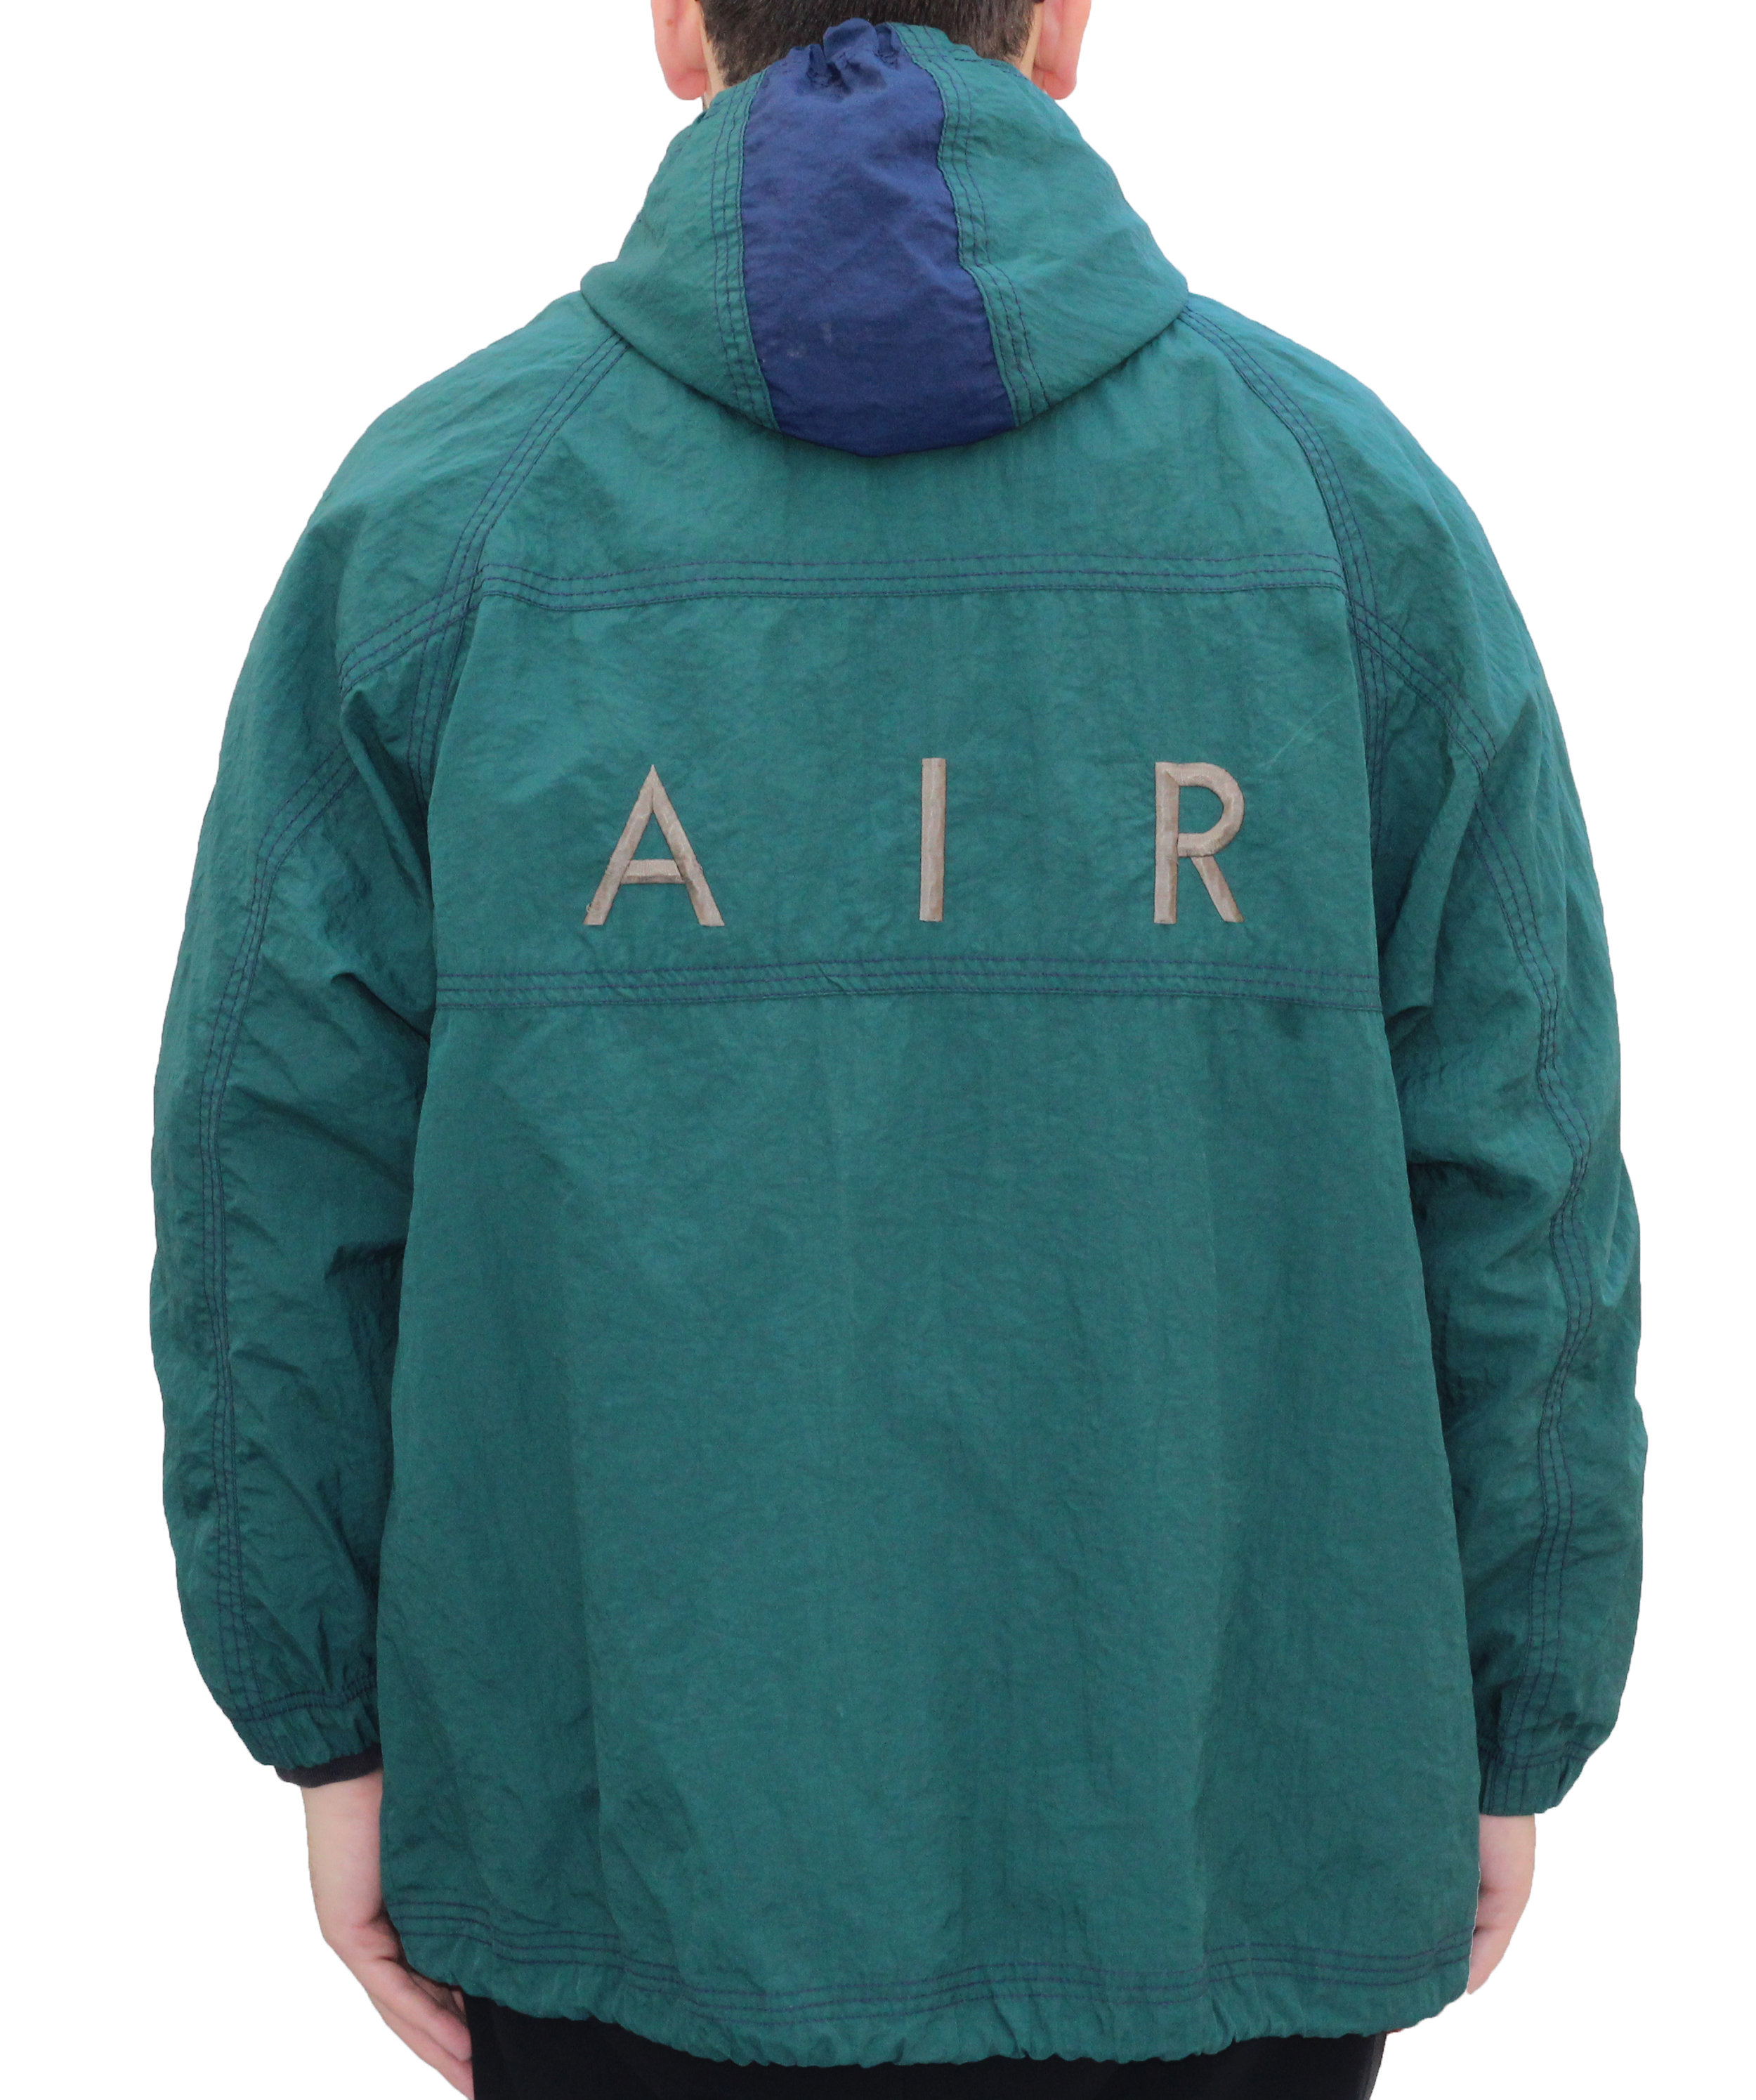 vintage nike air jacket